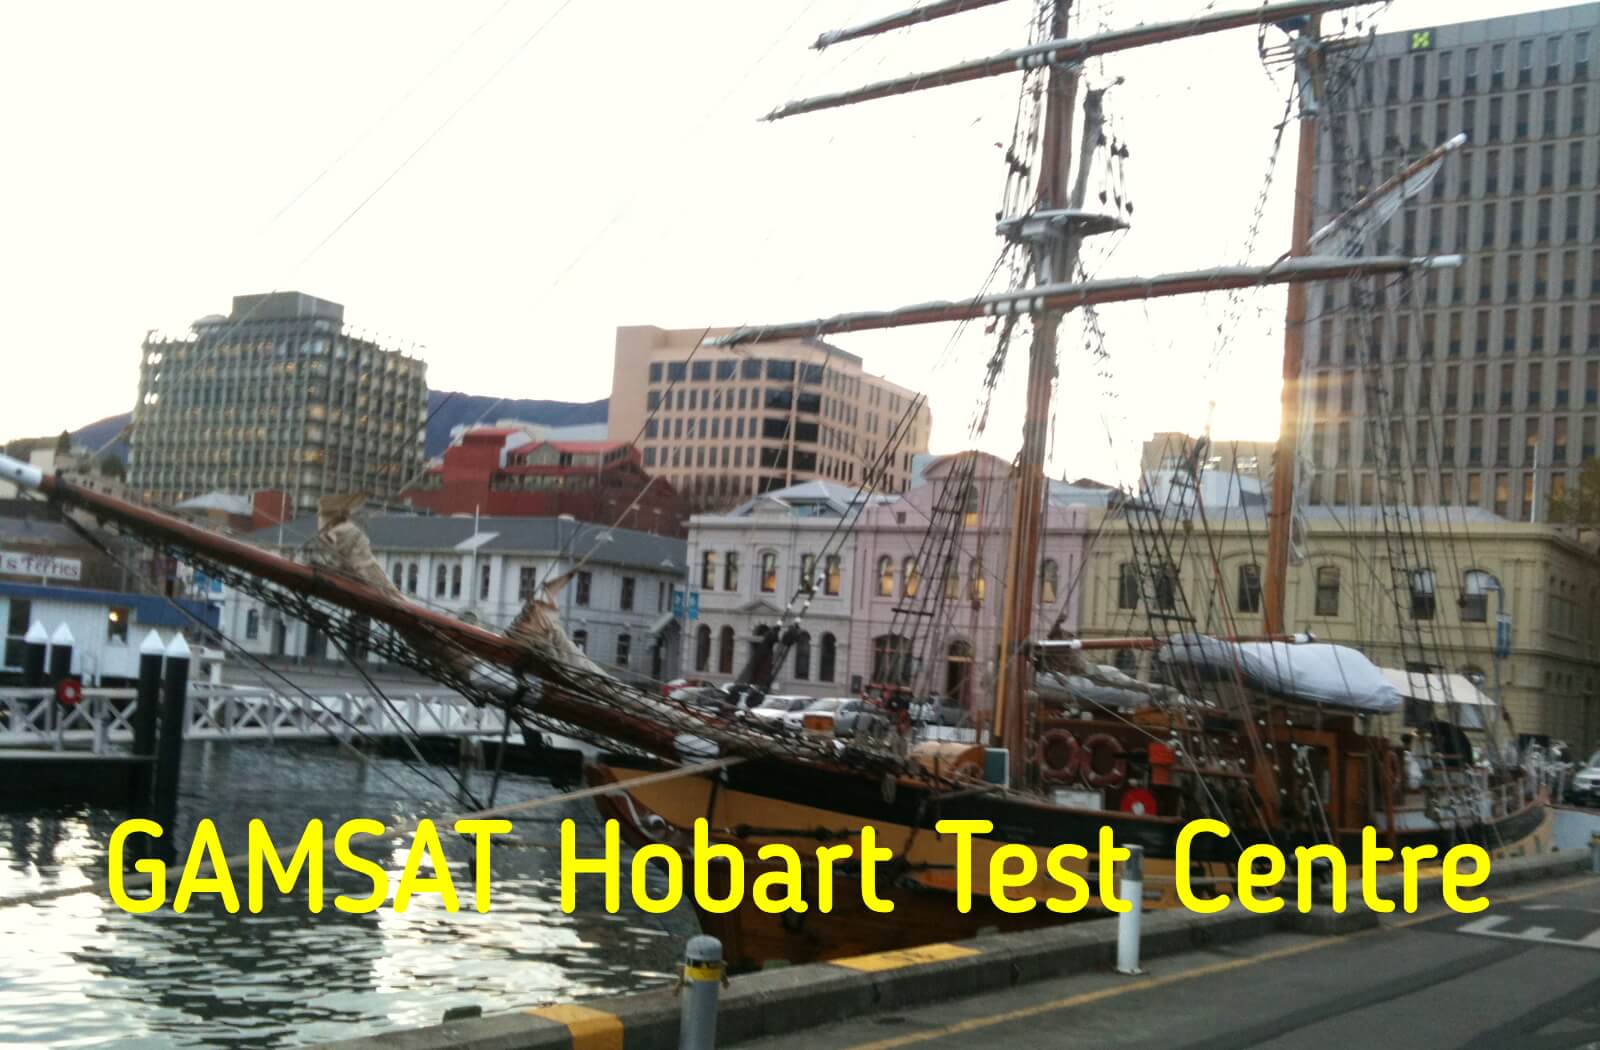 Where is GAMSAT held in Hobart?